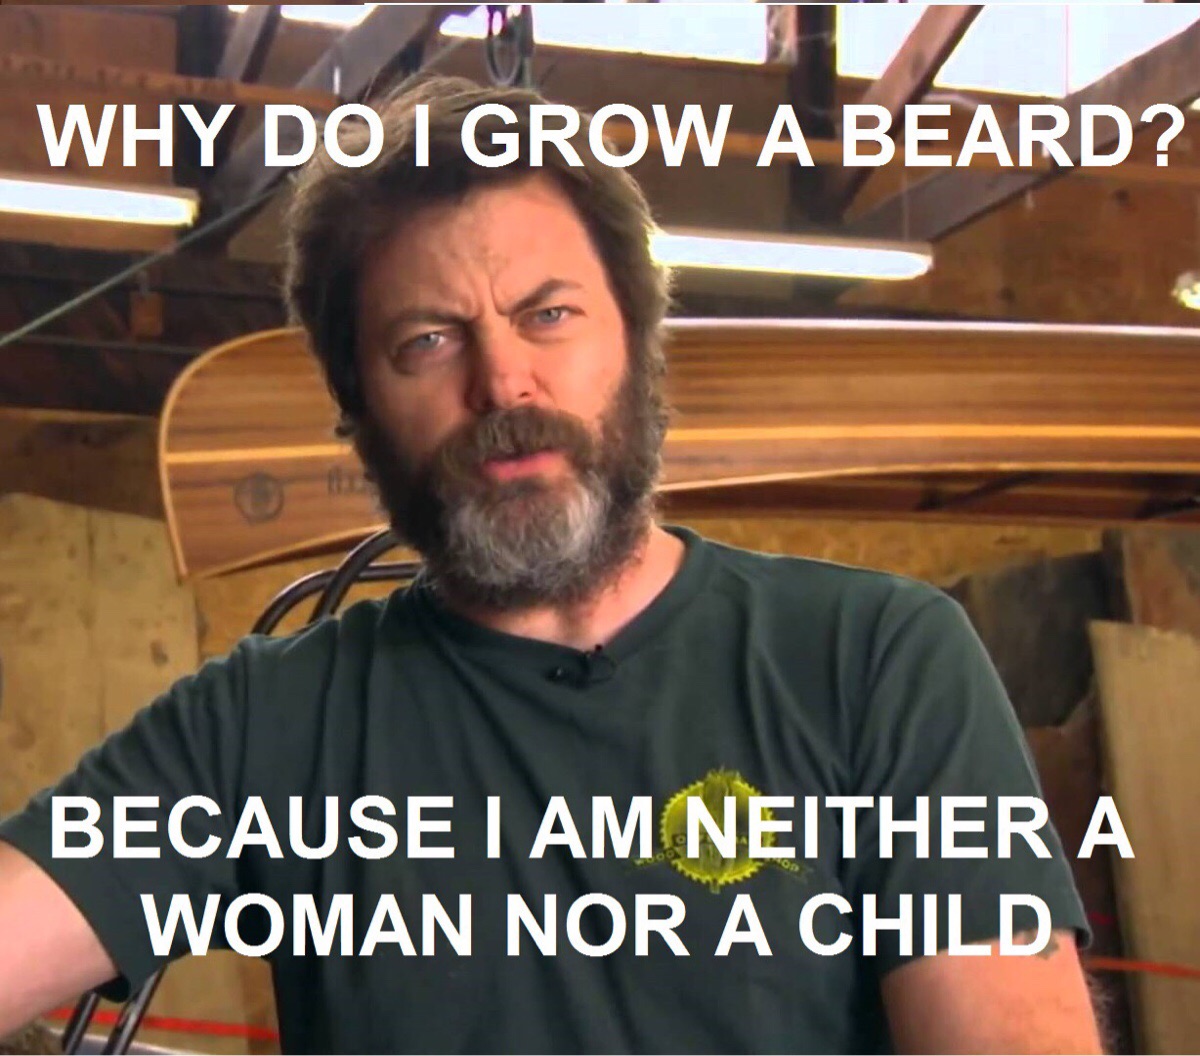 Why do I grow a beard?